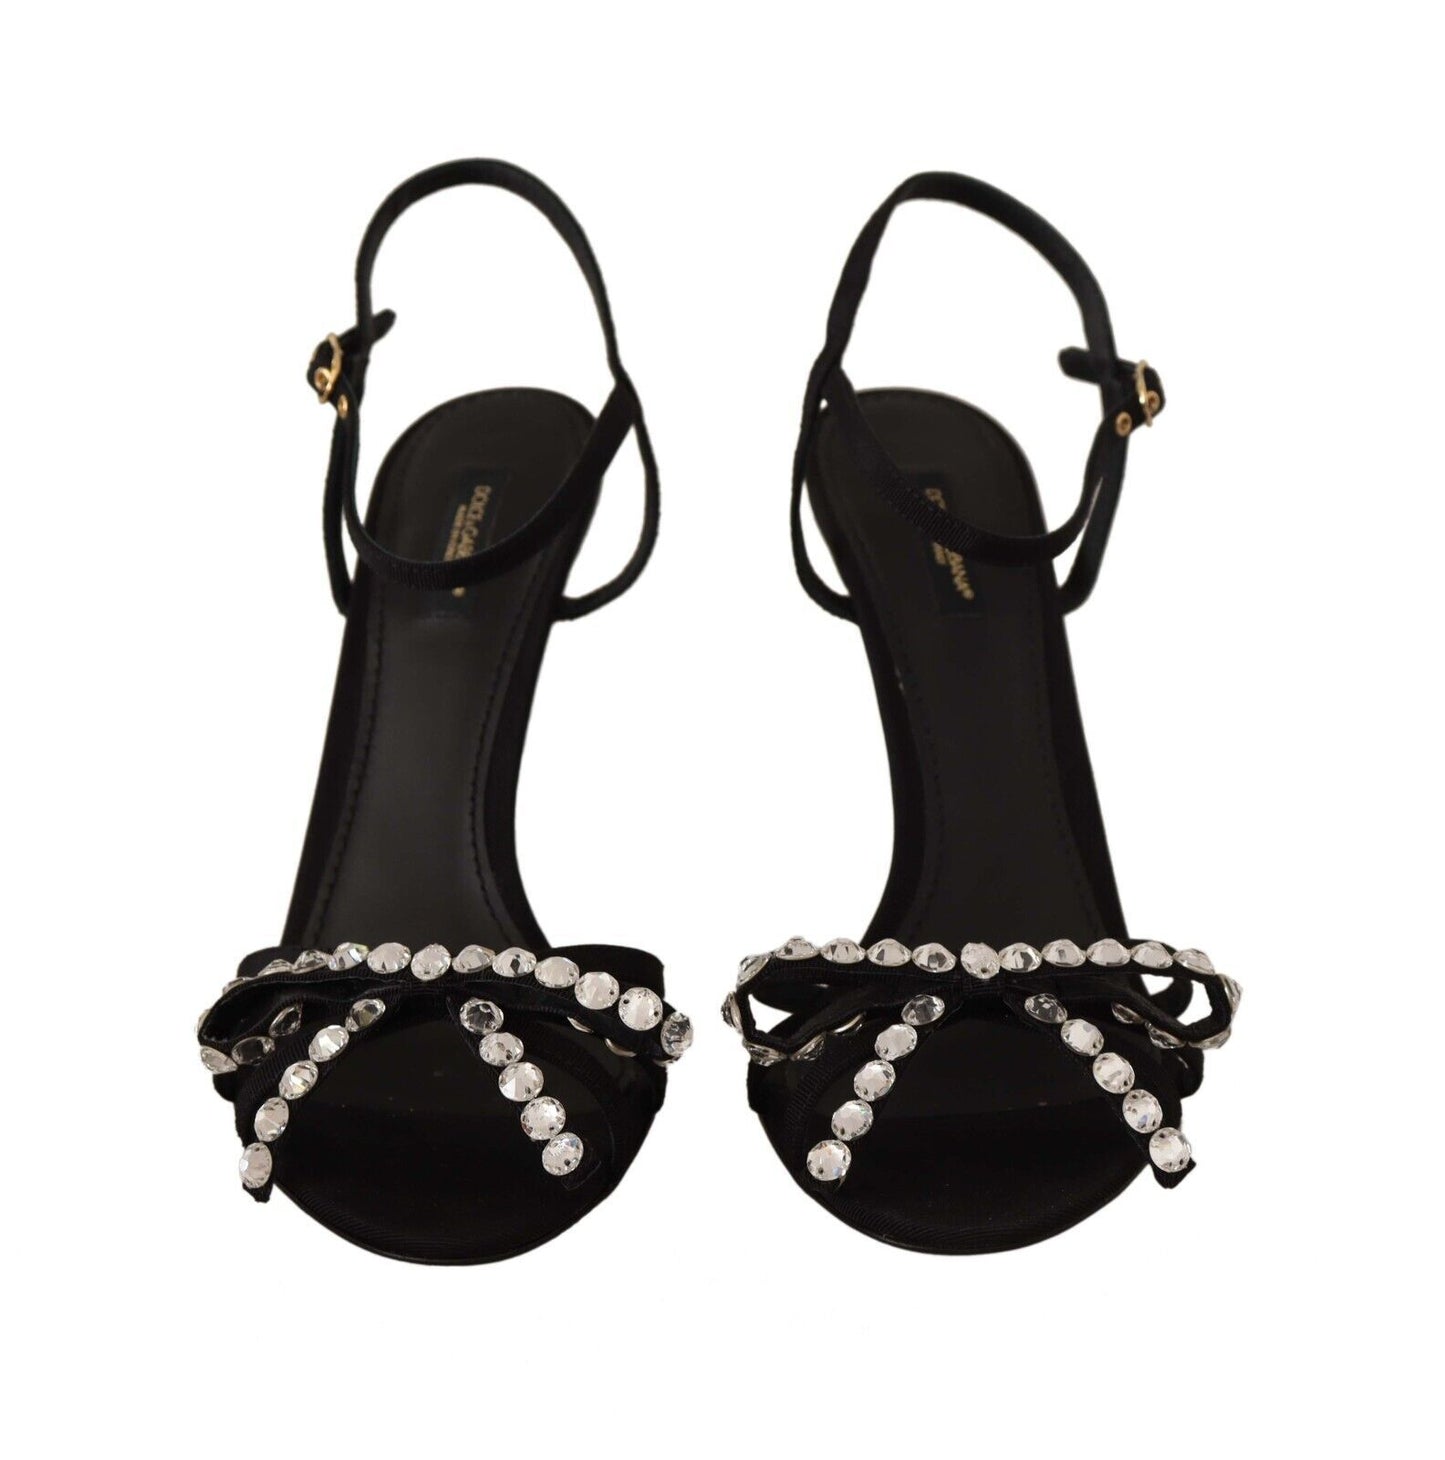 Elegant Black Viscose Ankle Strap Sandals with Crystals